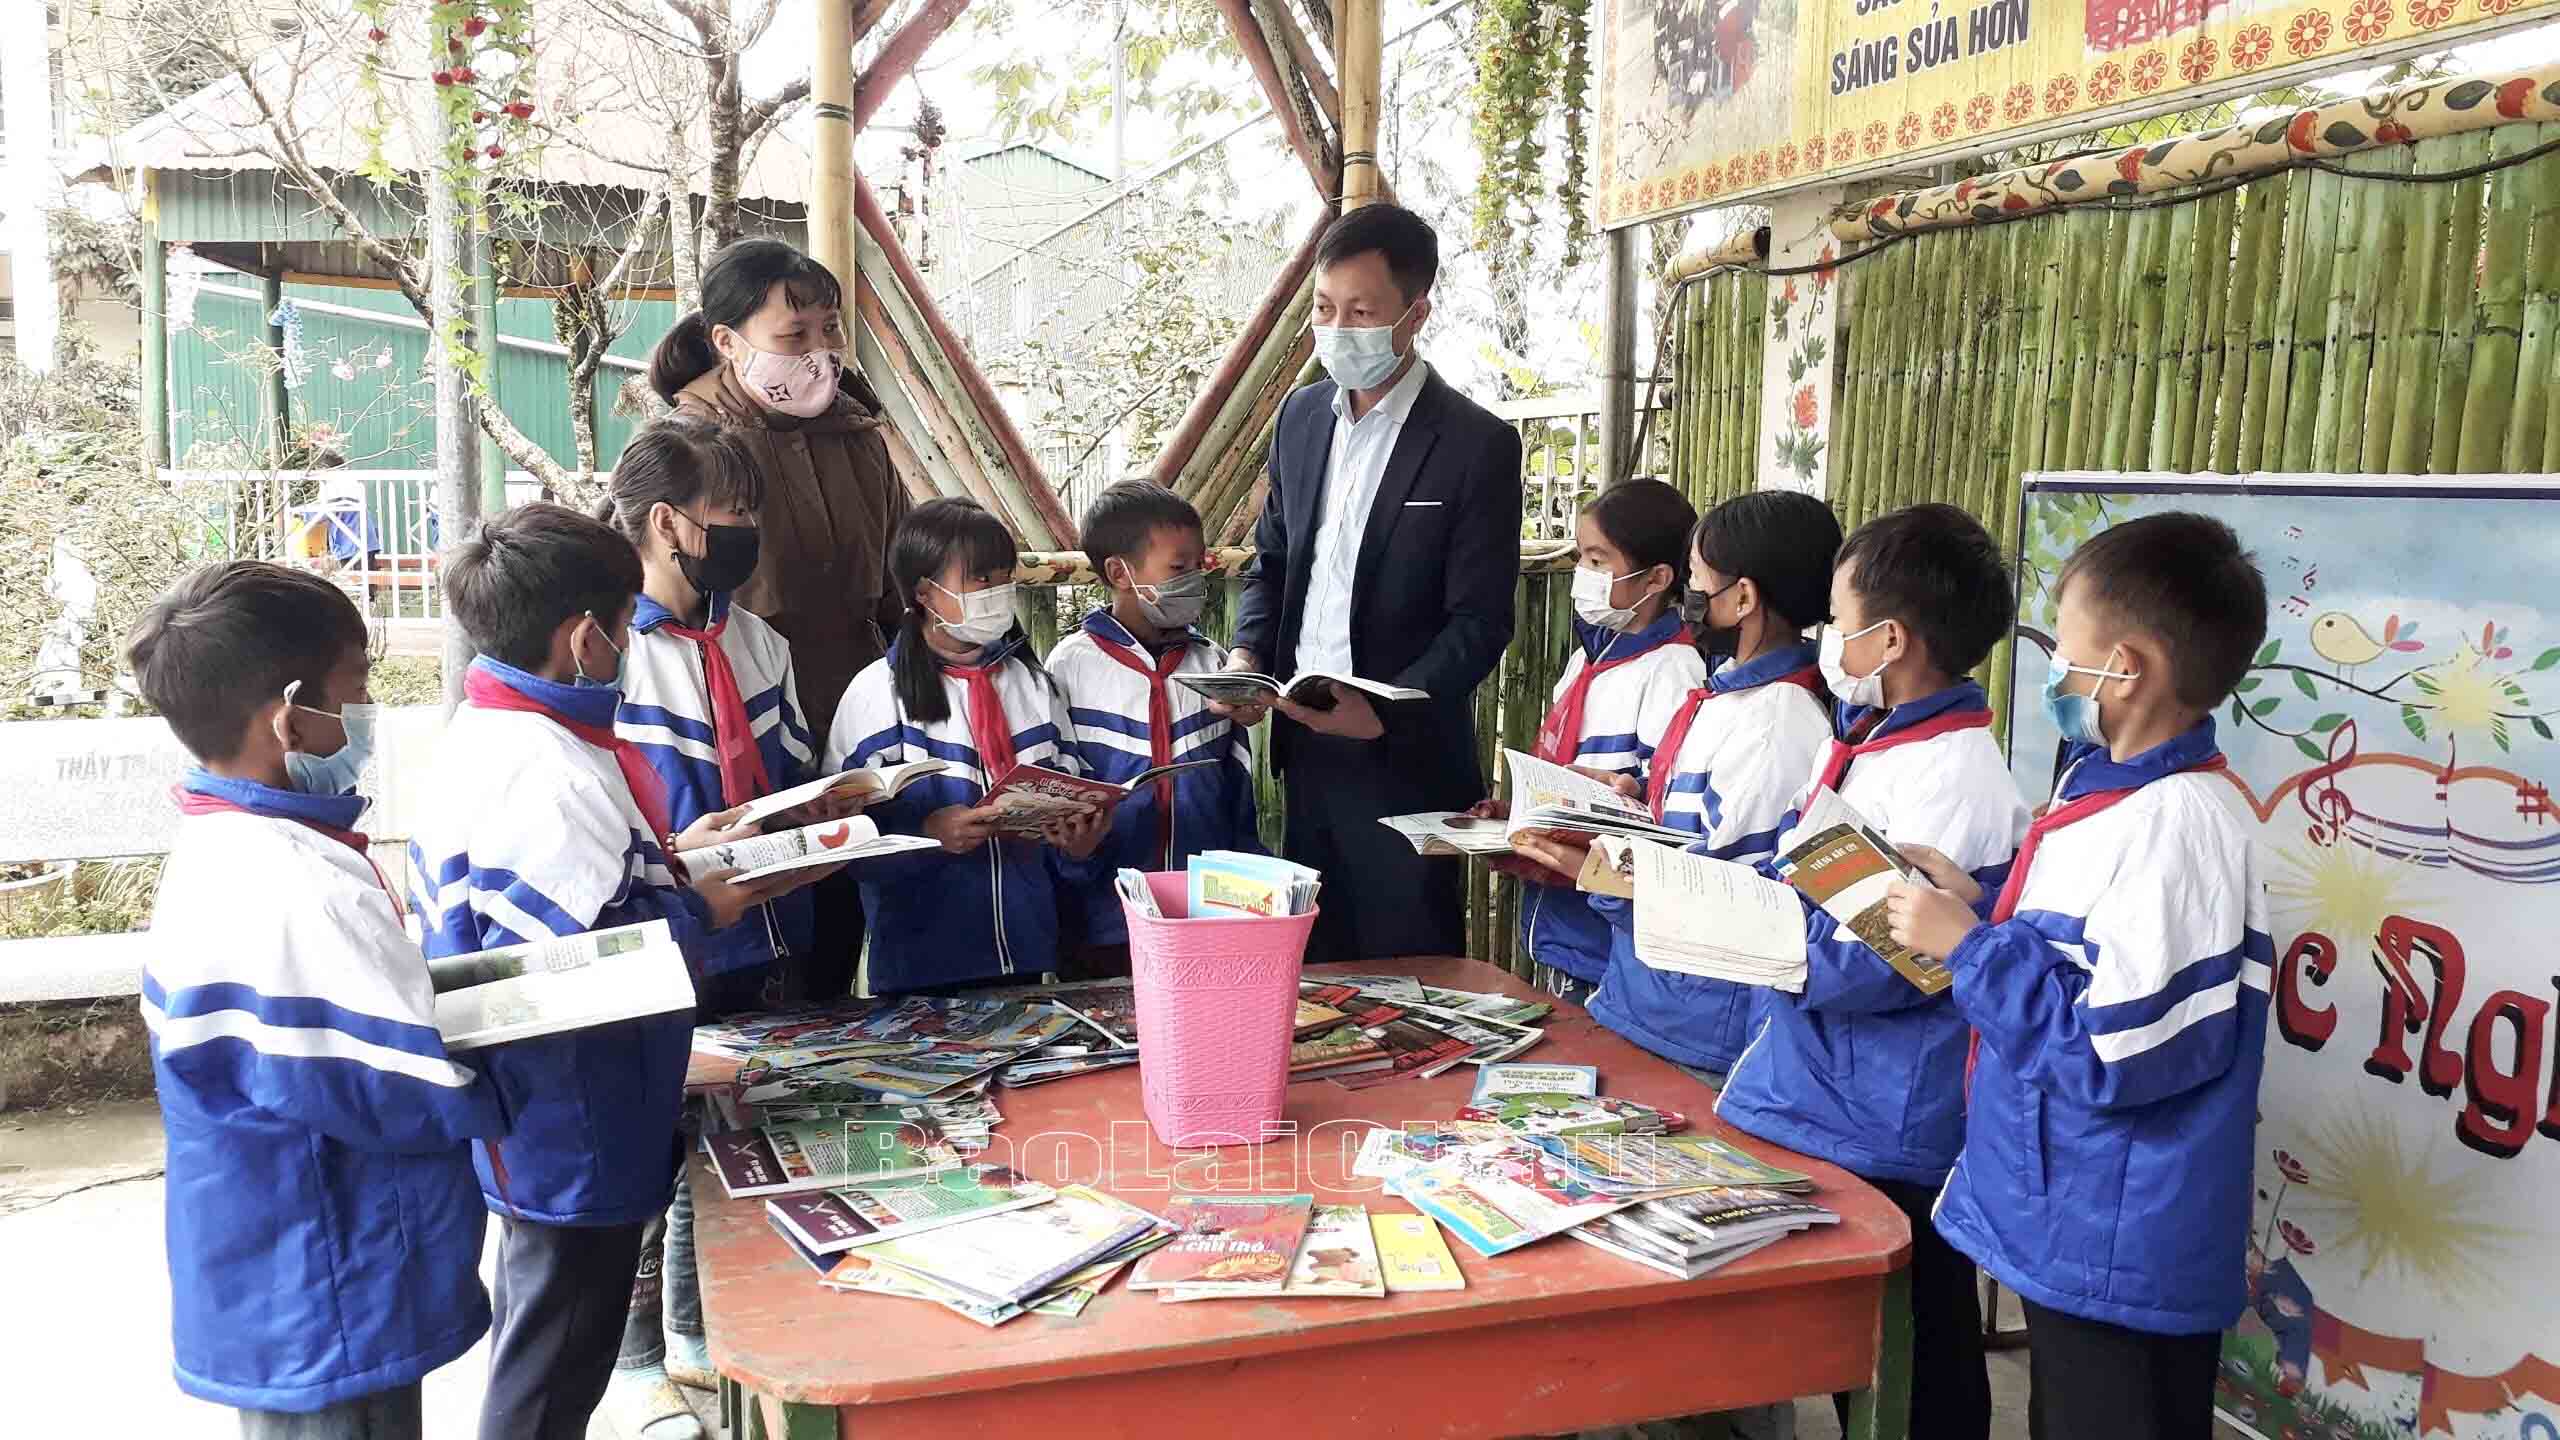 Học sinh Trường Phổ thông Dân tộc bán trú Tiểu học Dào San đọc sách nhằm nâng cao kiến thức, kỹ năng, phát triển tư duy, giáo dục và rèn luyện nhân cách con người. Ảnh: Bình Minh